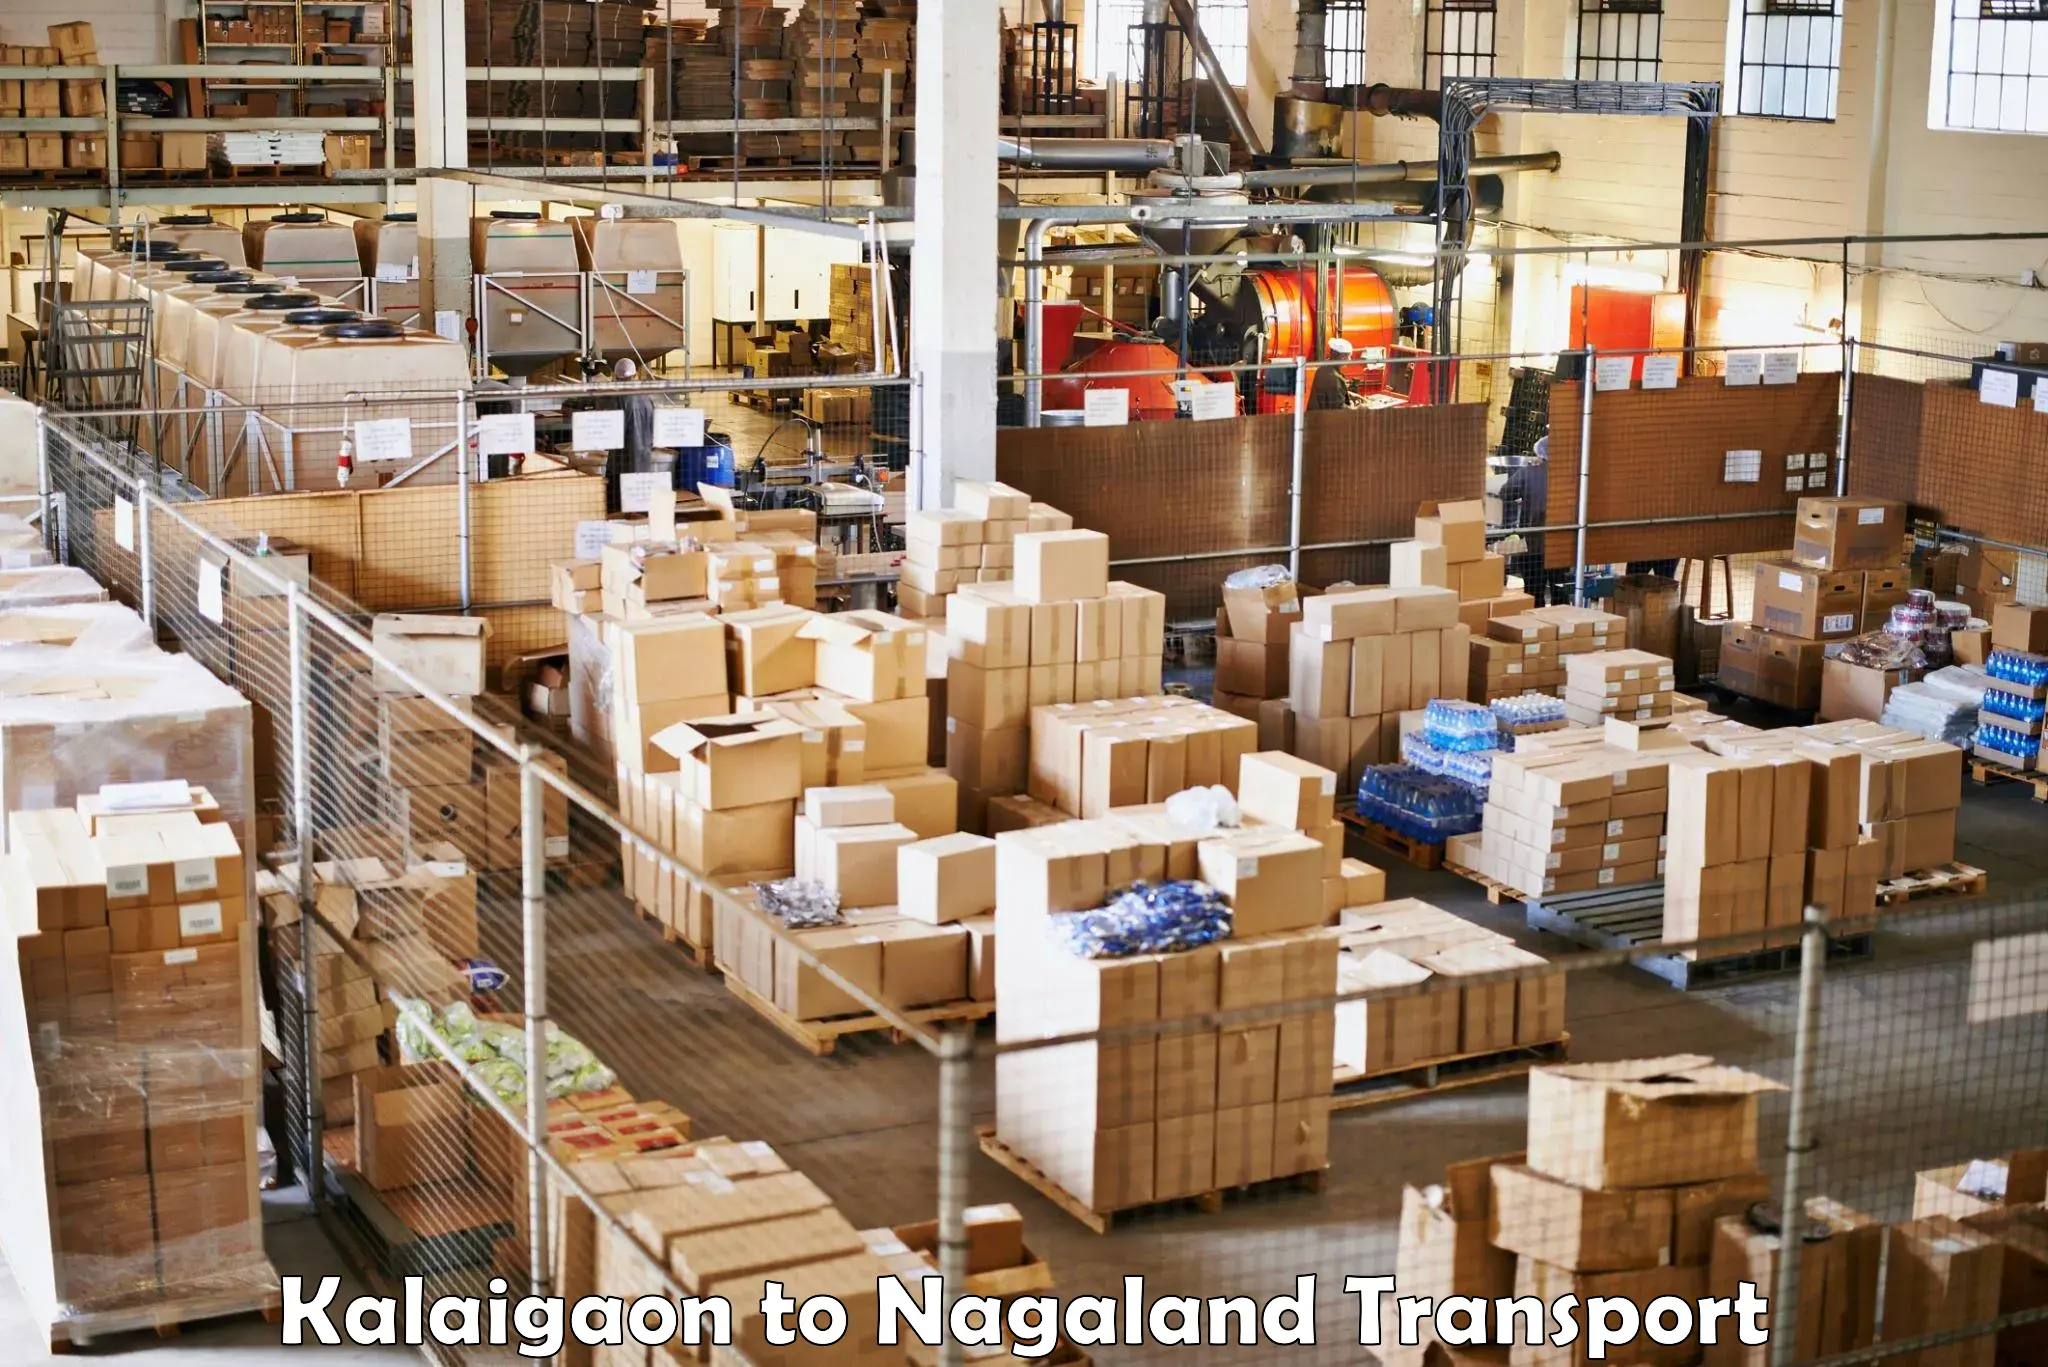 Road transport services Kalaigaon to Nagaland